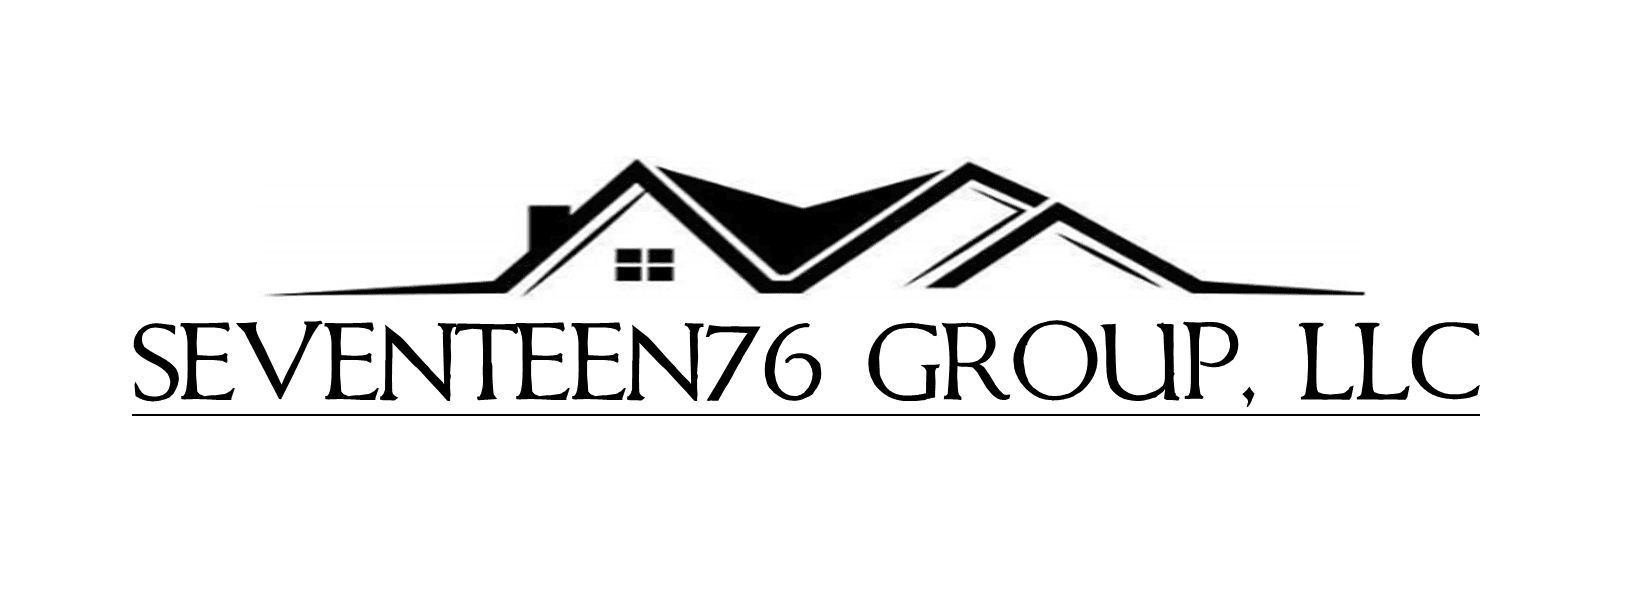 1776 Group, LLC